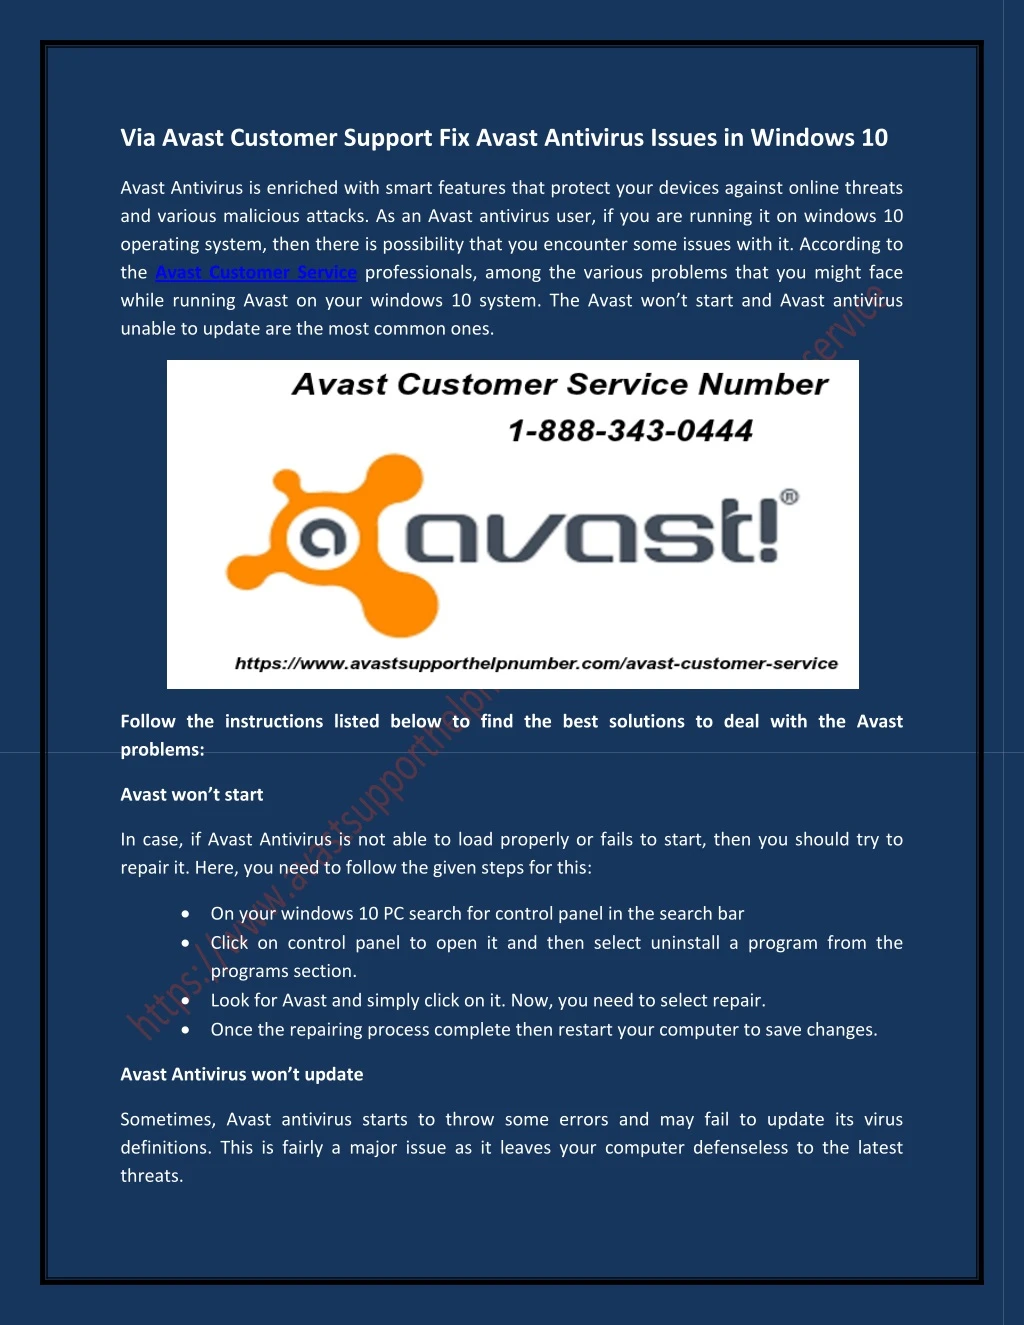 via avast customer support fix avast antivirus